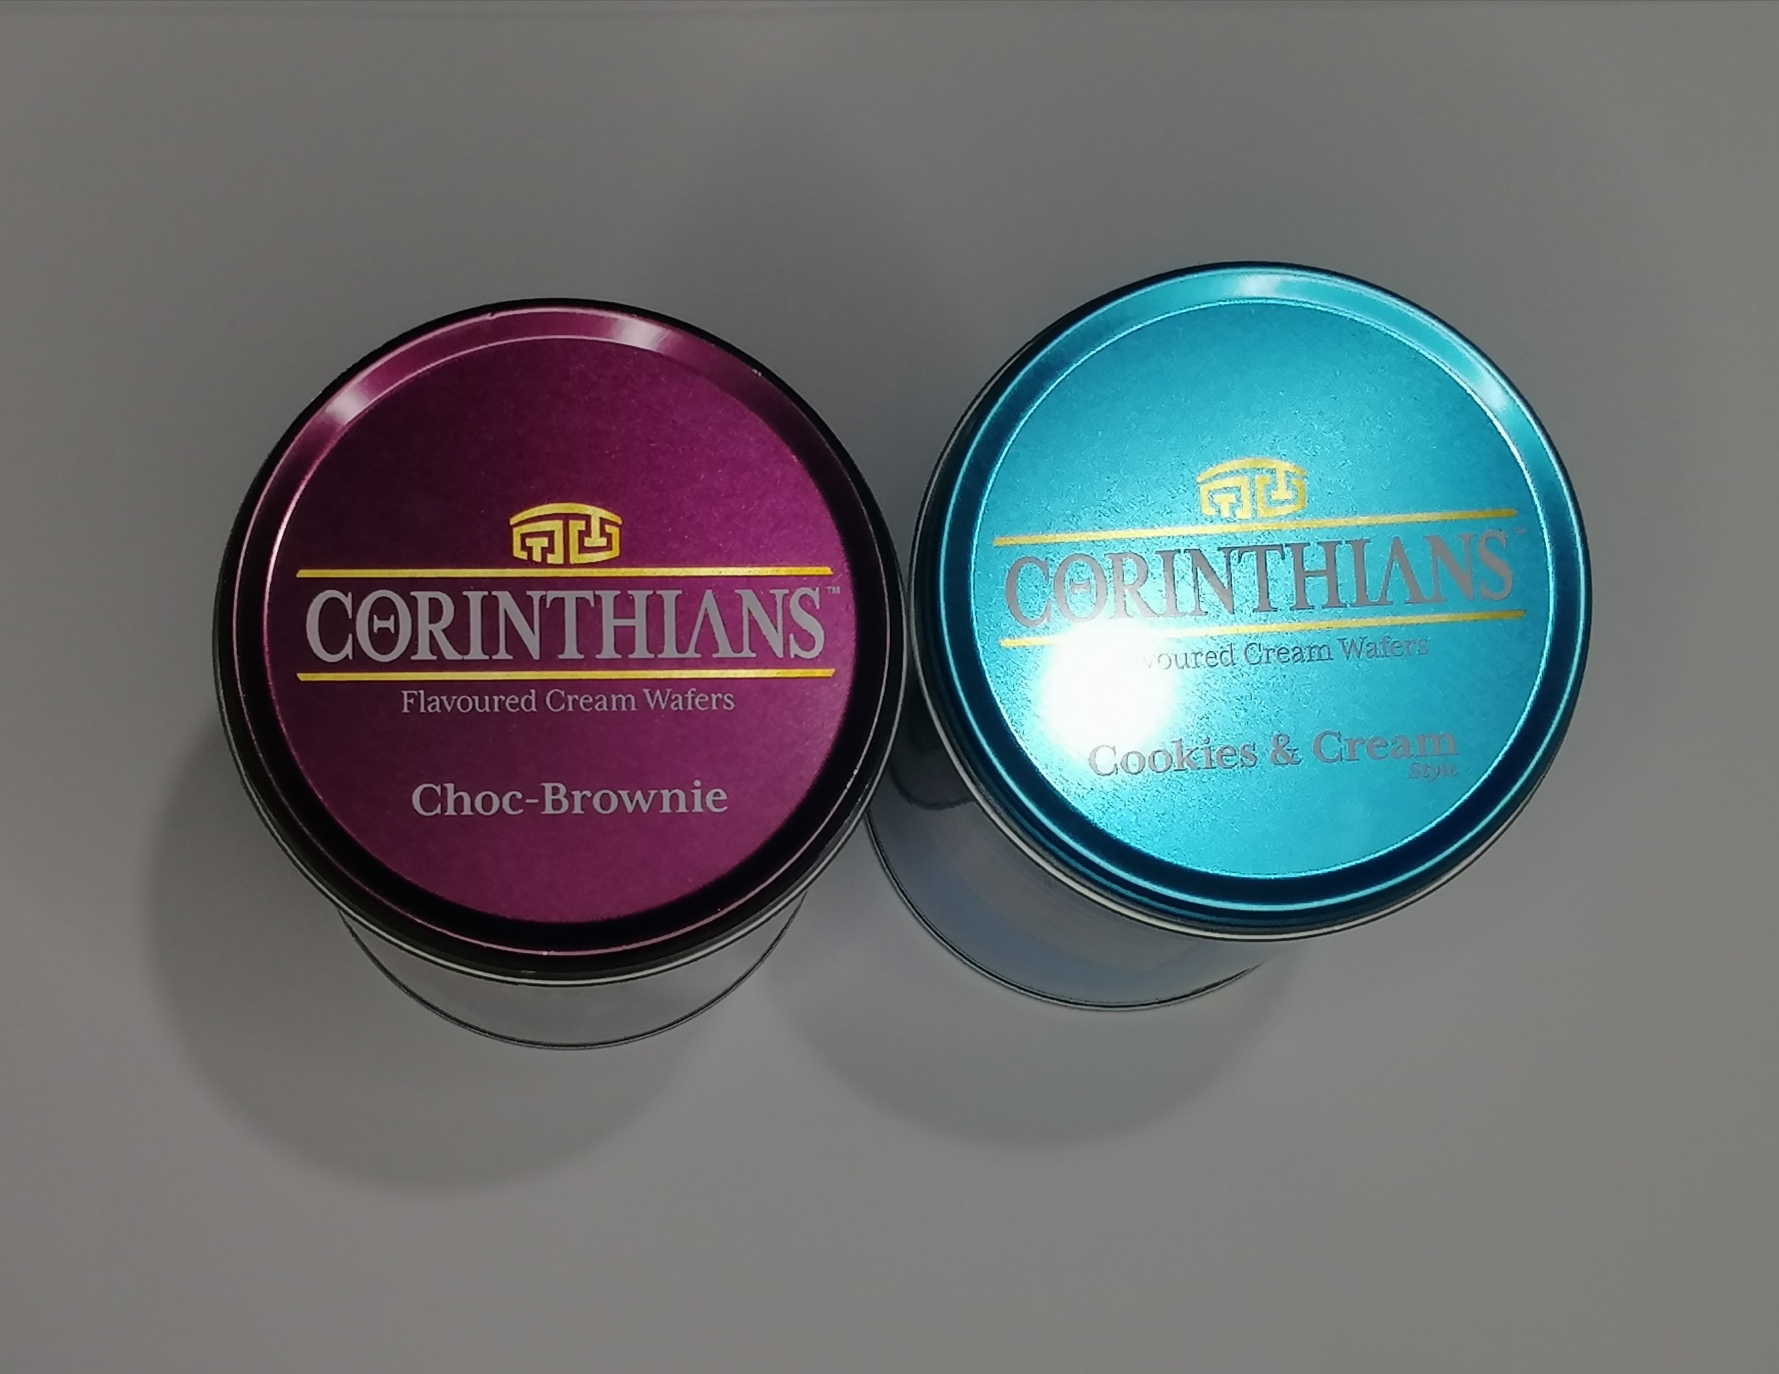 Corinthians Flavoured Cream Wafer Choc-Brownie 300g